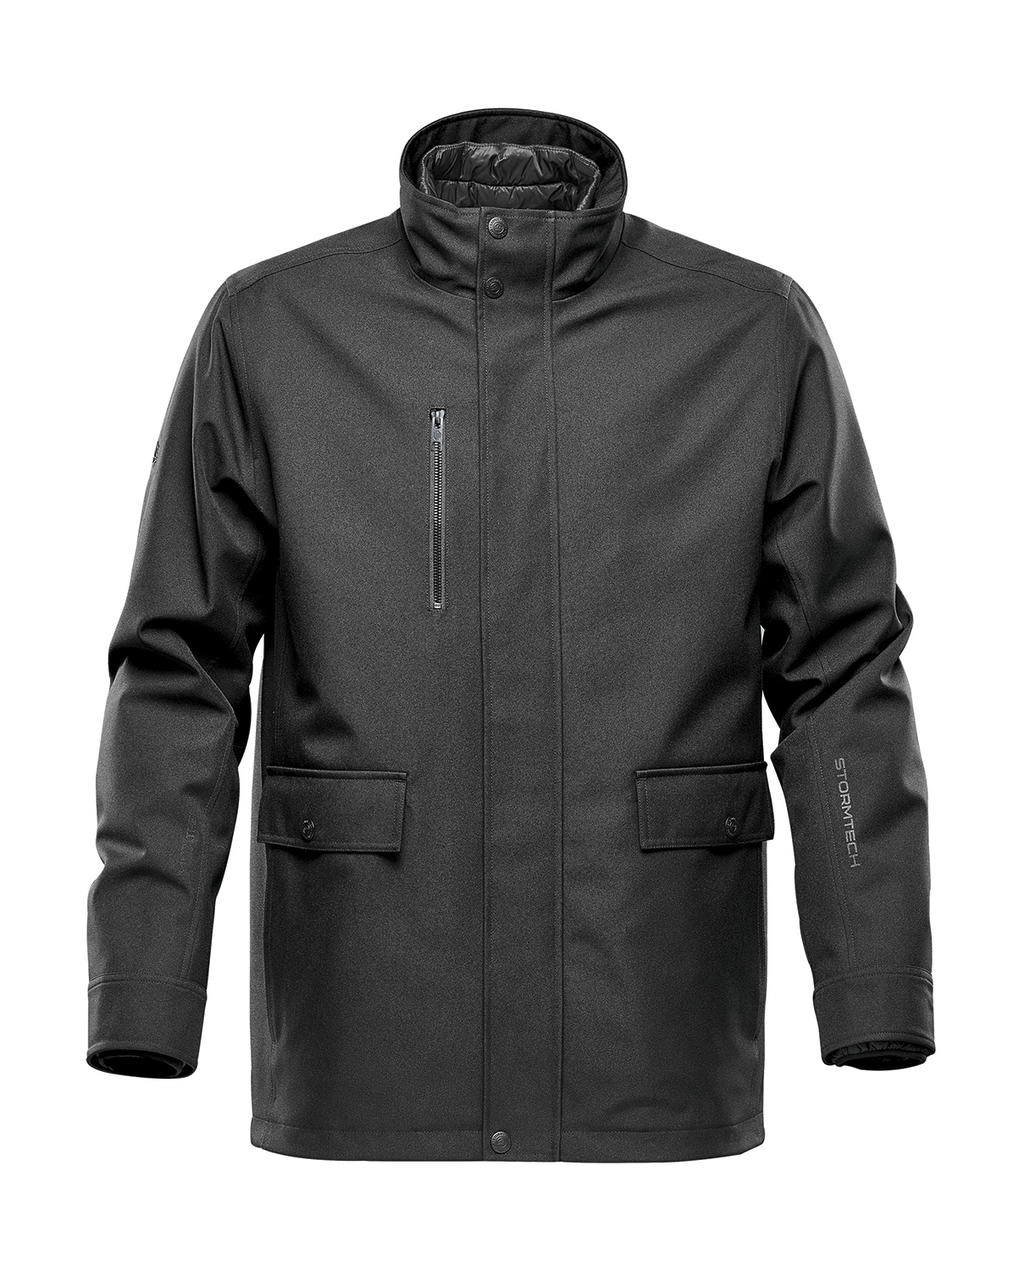 Montauk System Jacket zum Besticken und Bedrucken in der Farbe Black mit Ihren Logo, Schriftzug oder Motiv.